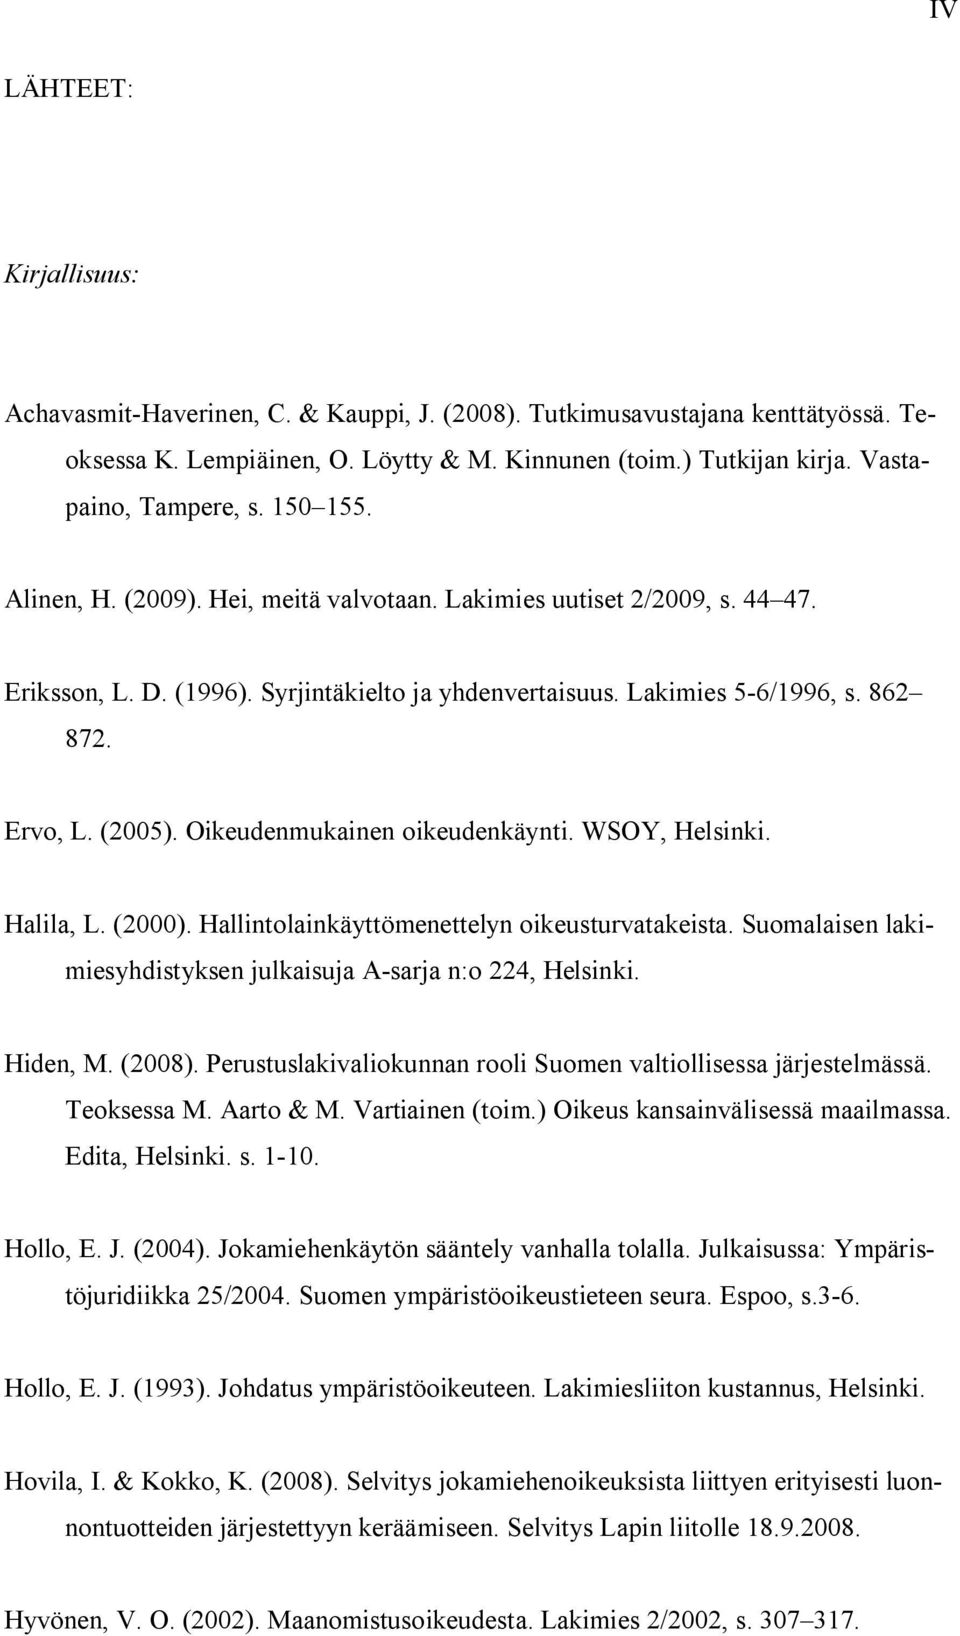 Ervo, L. (2005). Oikeudenmukainen oikeudenkäynti. WSOY, Helsinki. Halila, L. (2000). Hallintolainkäyttömenettelyn oikeusturvatakeista.